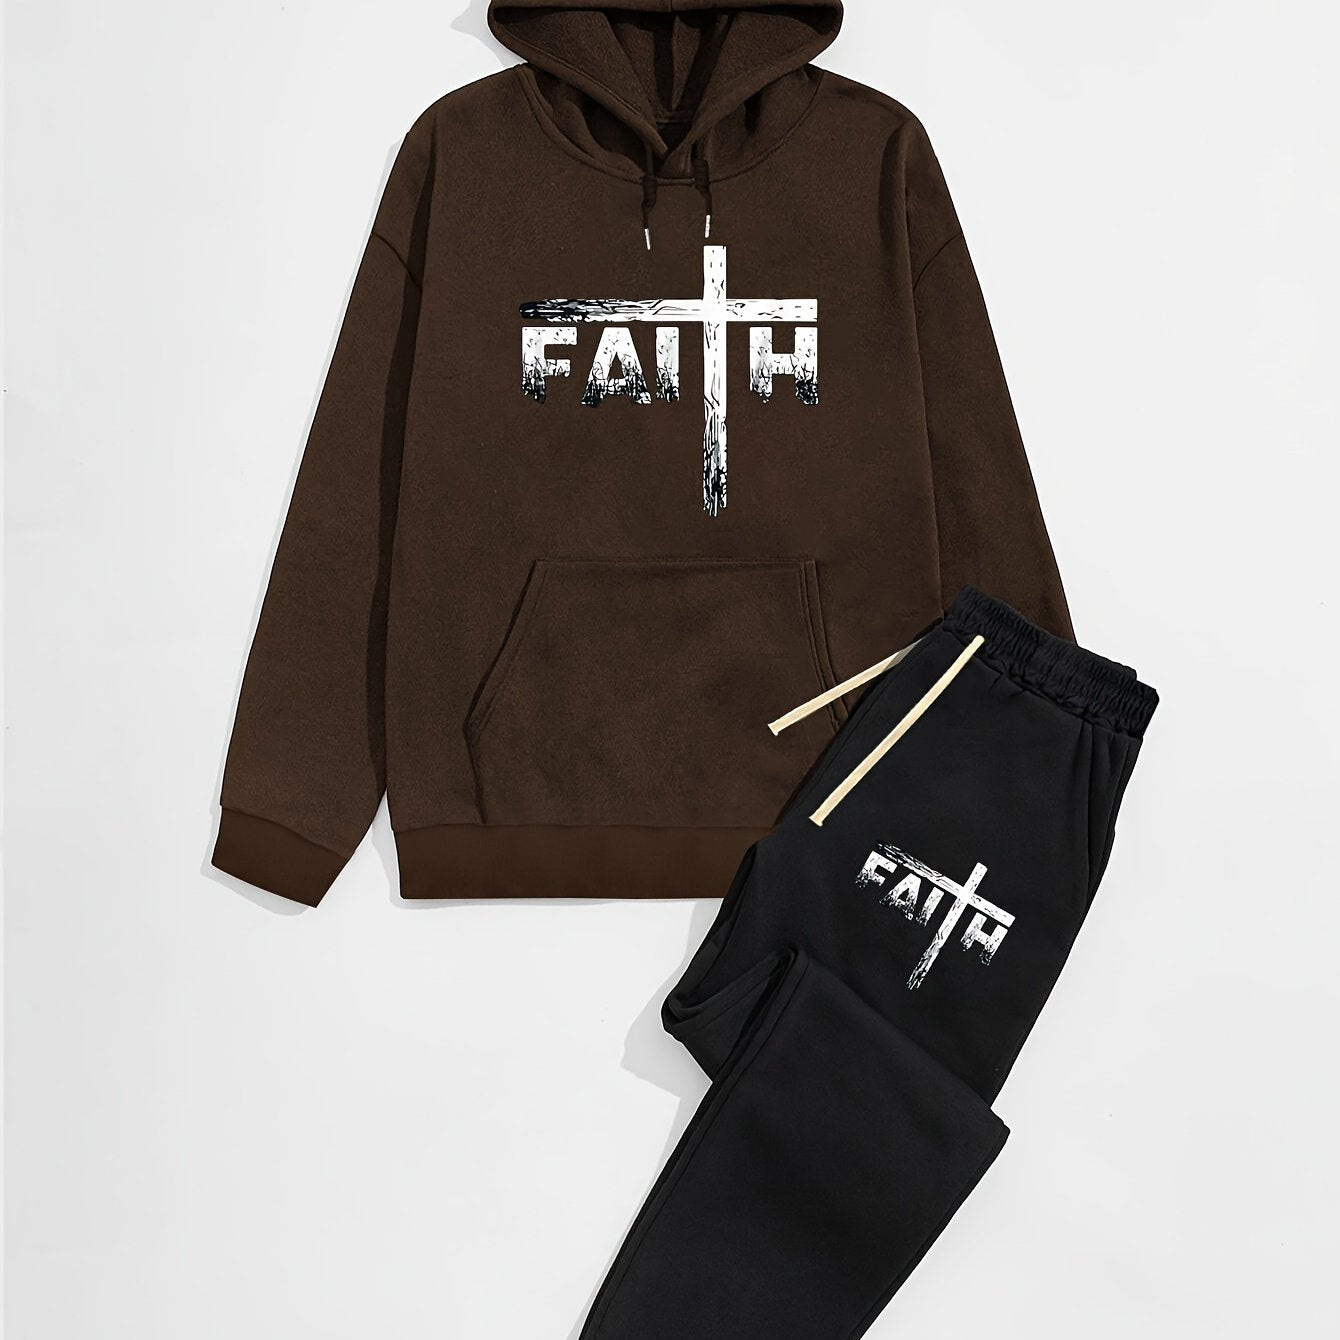 FAITH Men's Christian Casual Outfit claimedbygoddesigns